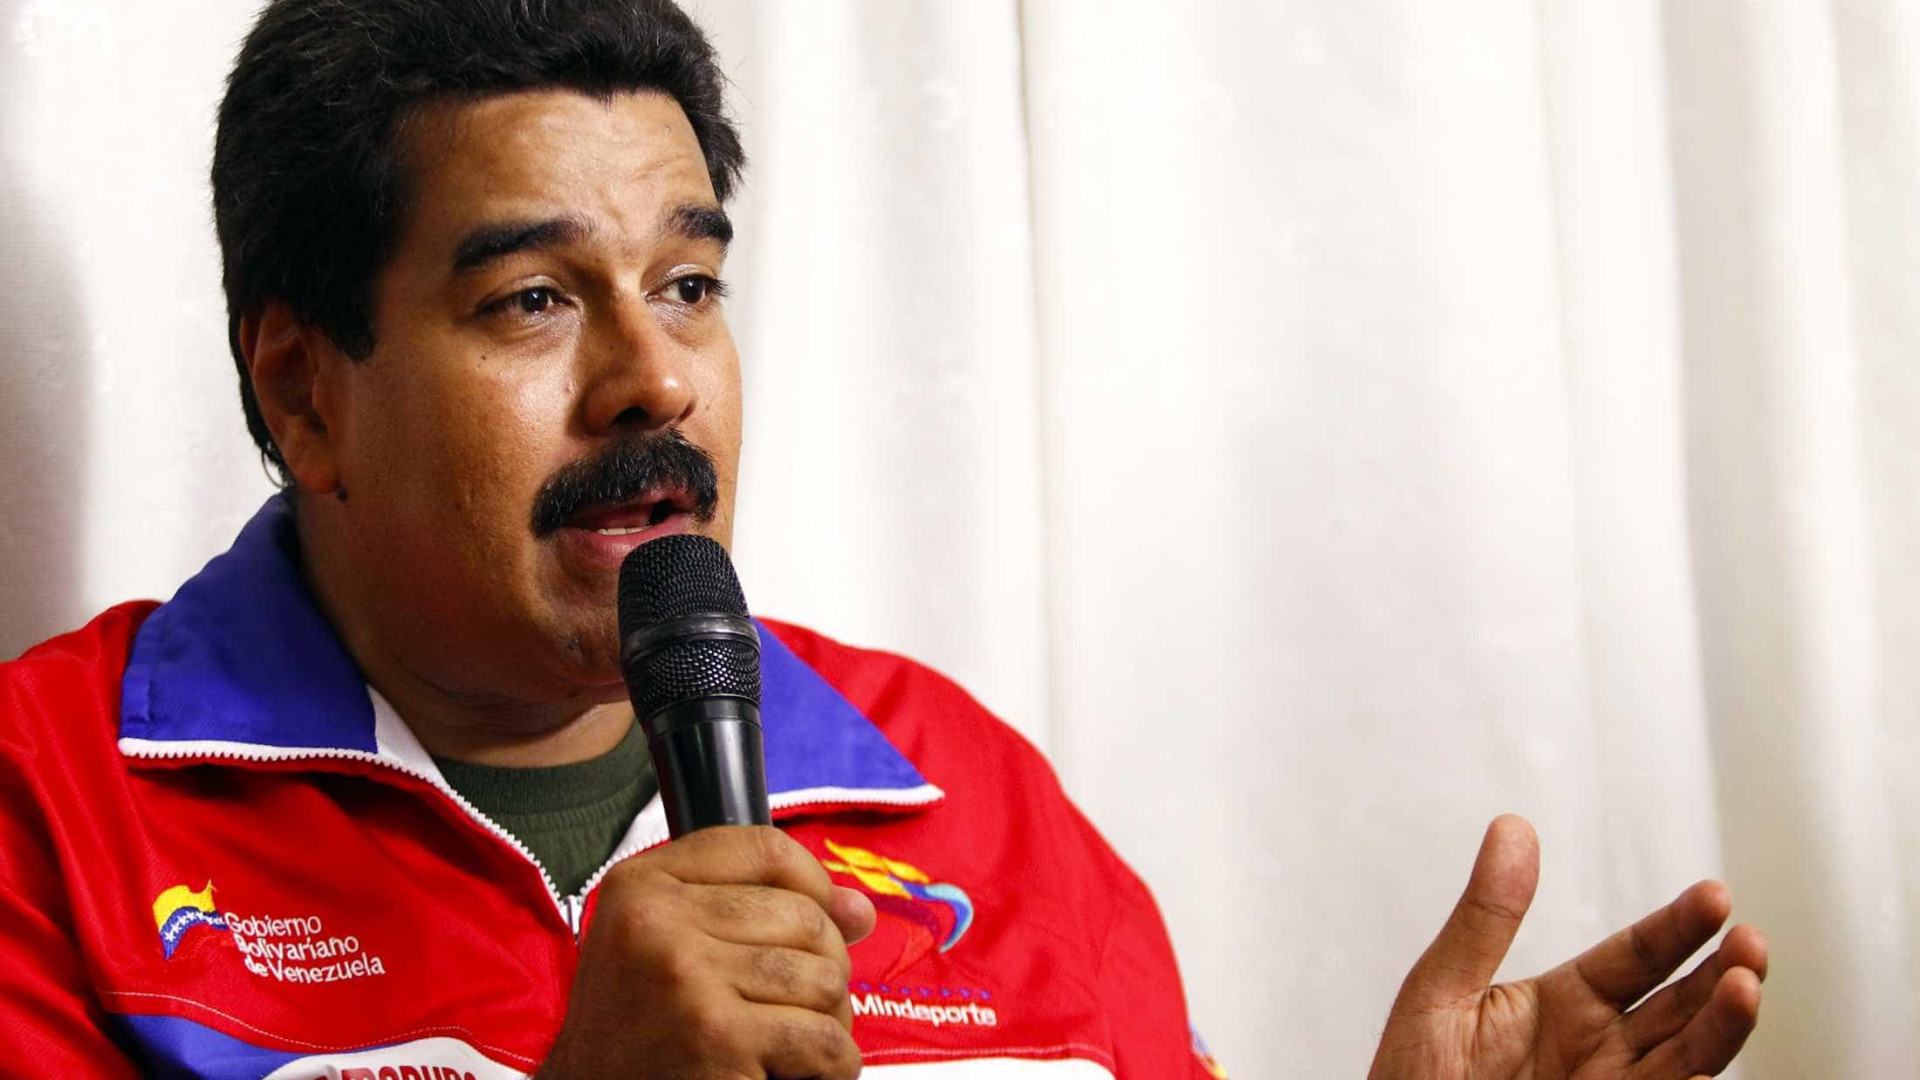 TV mostrará “potência” das Forças Armadas venezuelanas